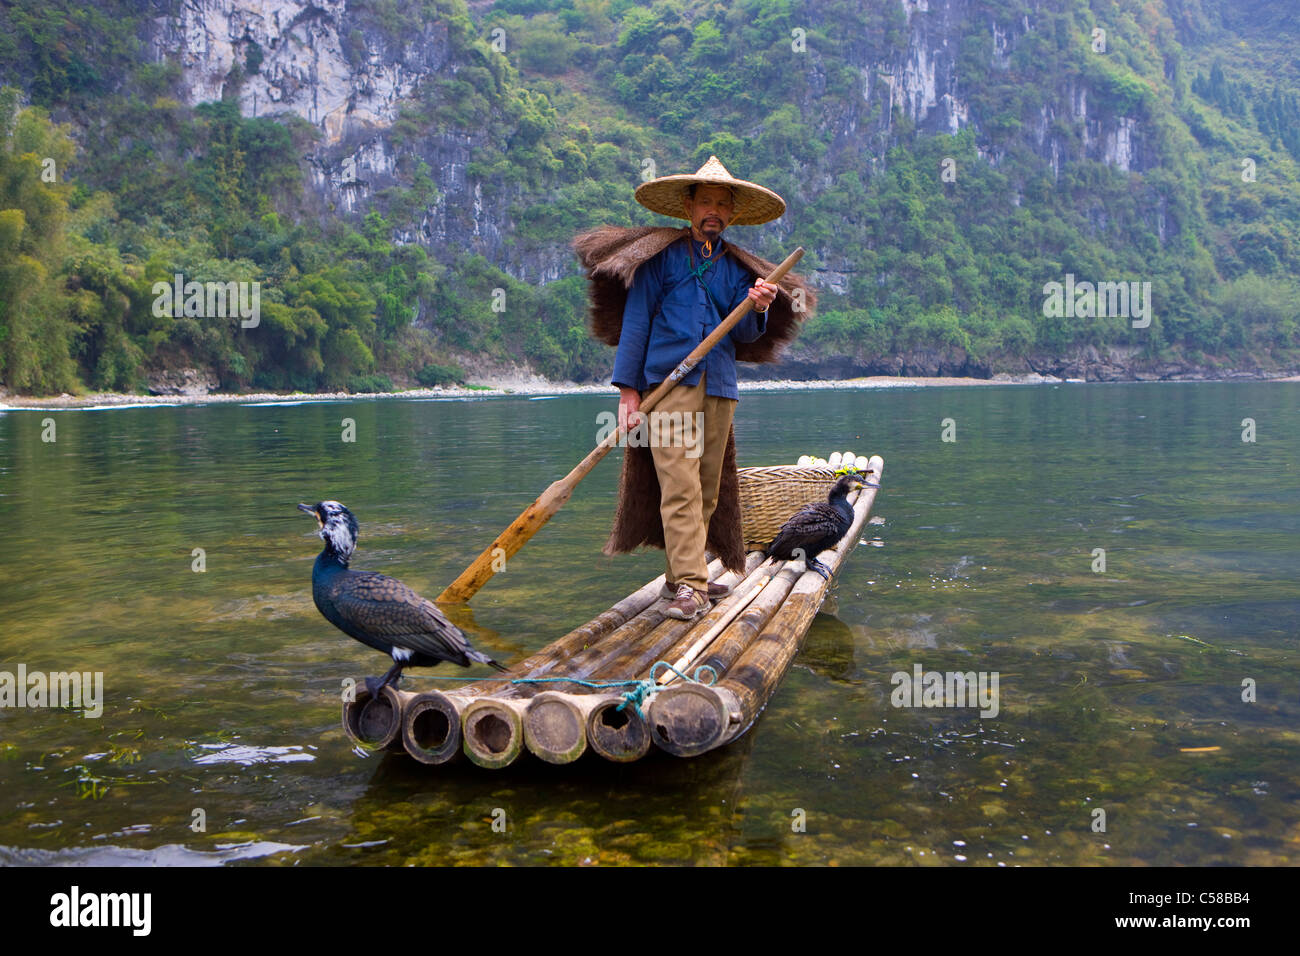 Río Li, China, Asia, río, caudal, pescador, barco, barco de bambú, aves, cormoranes Foto de stock